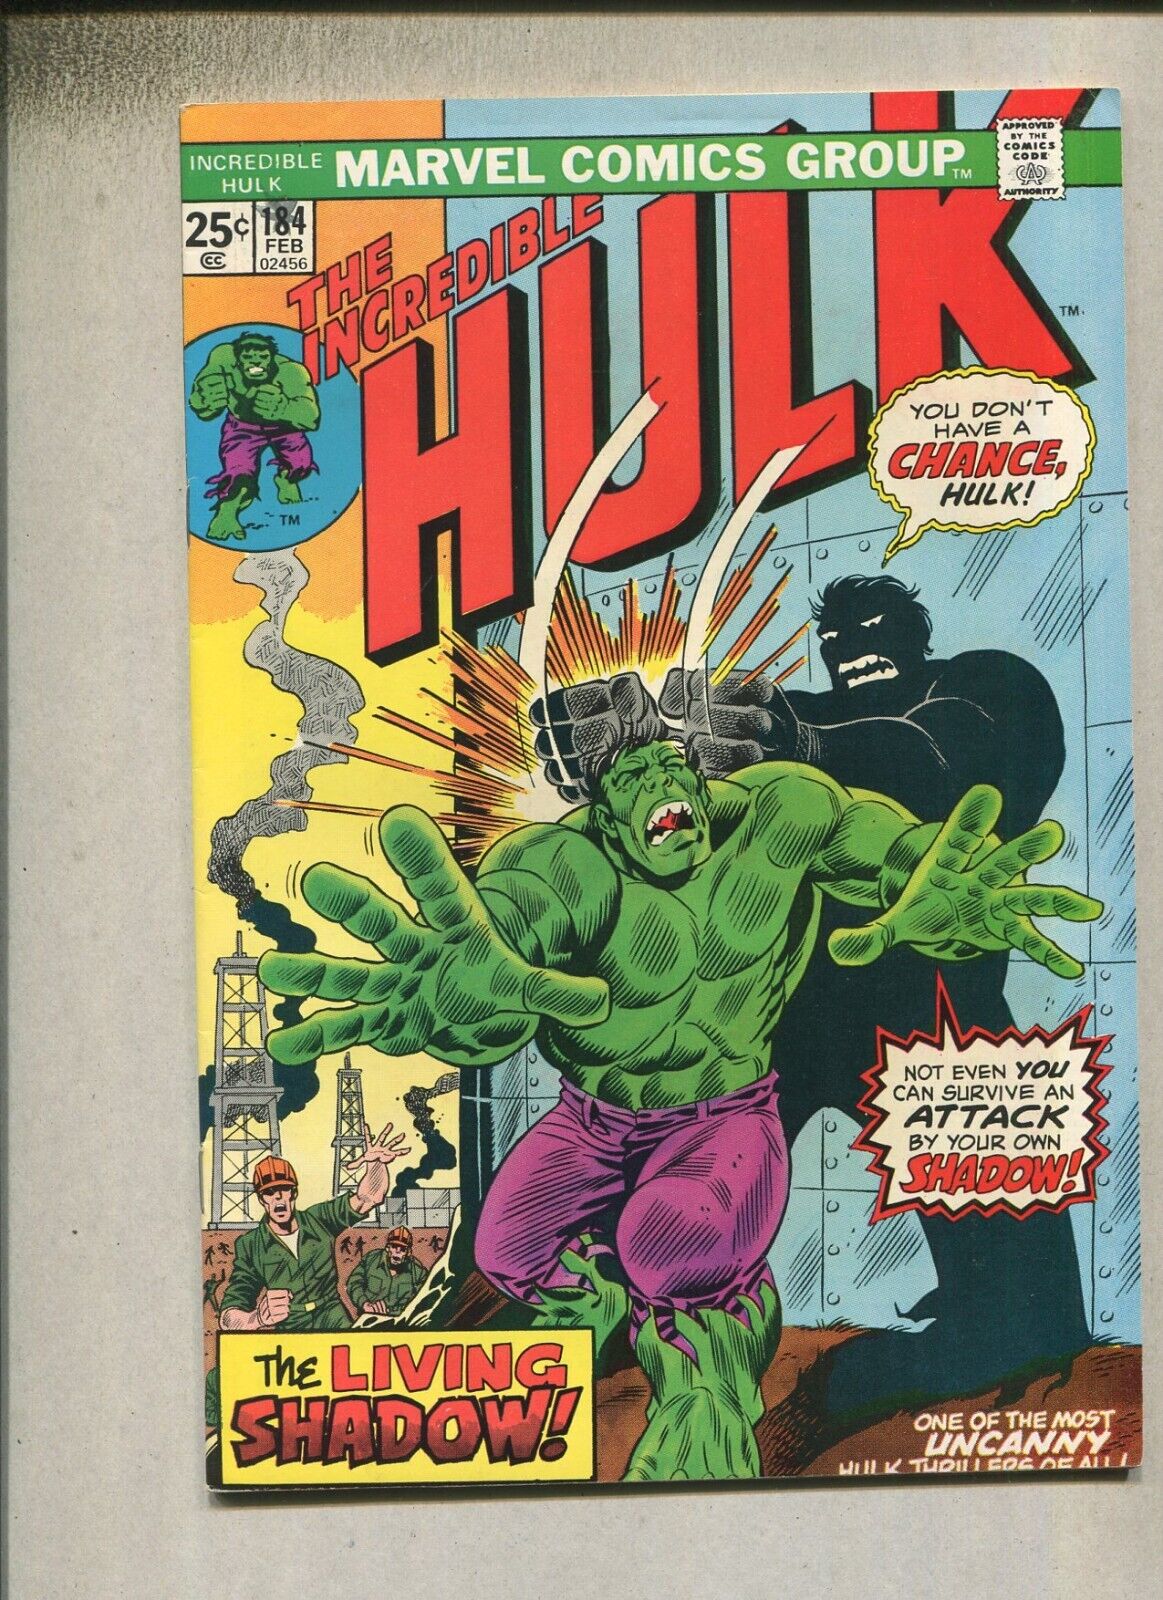 The Incredible Hulk #184 VF The Living Shadow  Marvel Comics  SA